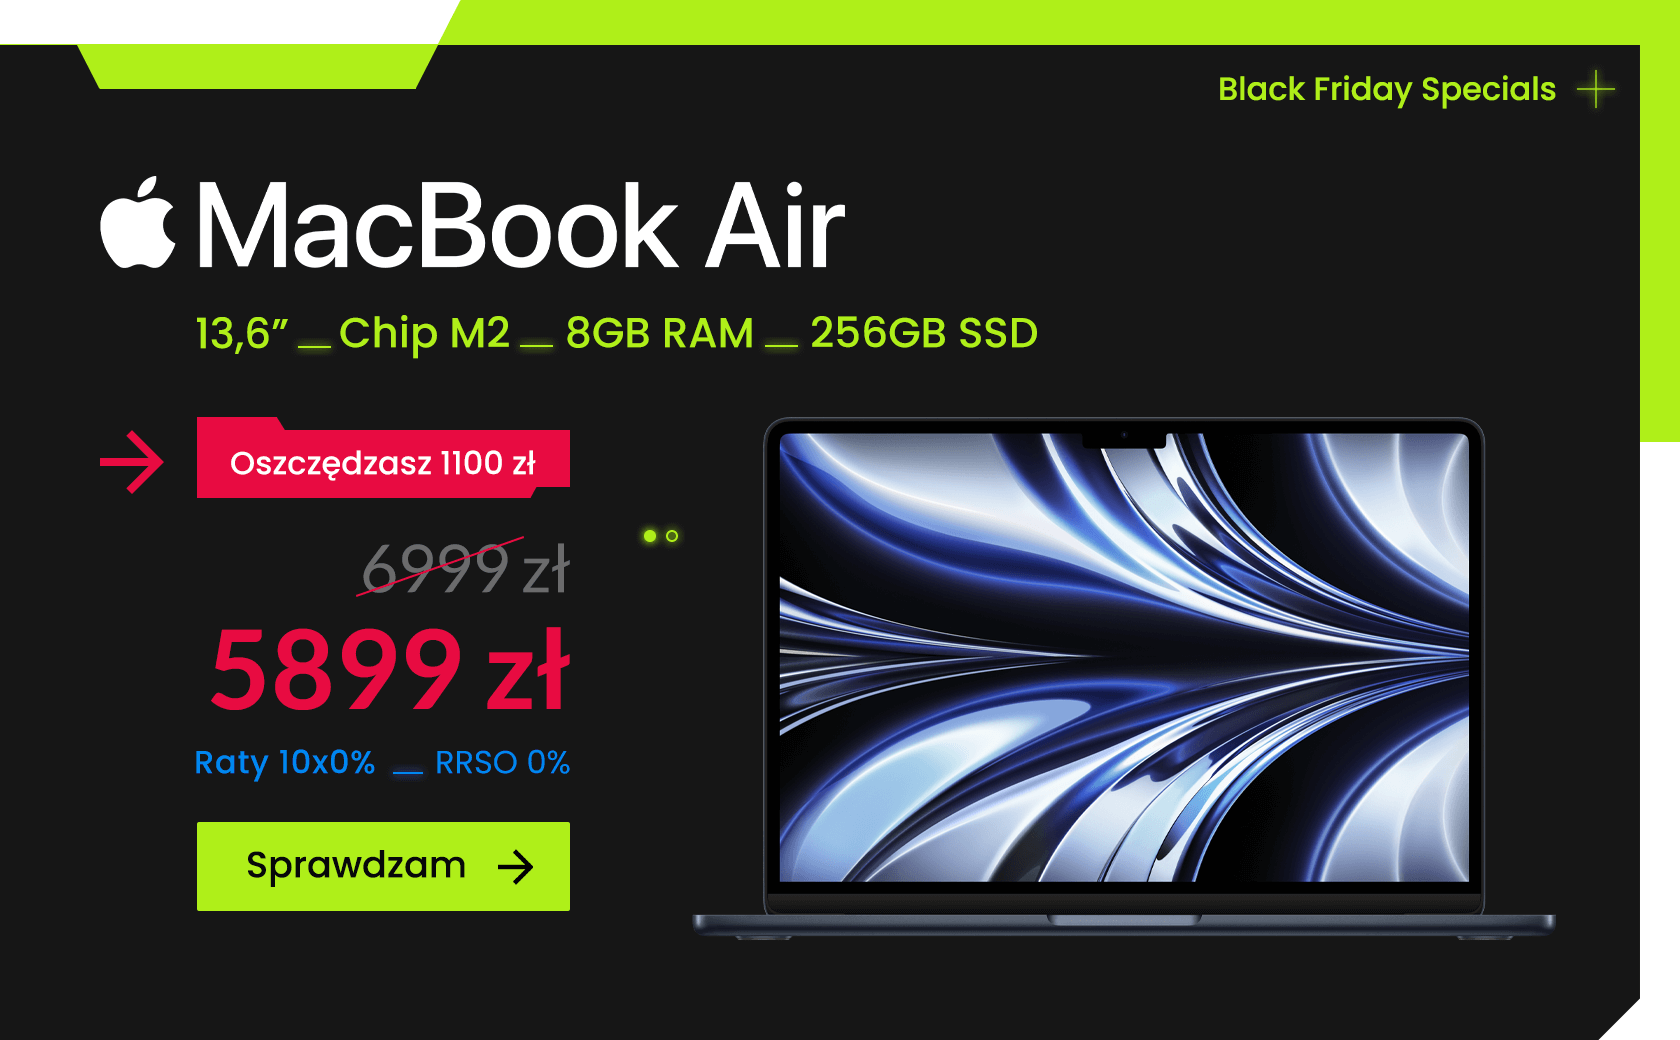 Black Friday Specials - MacBook Air M2